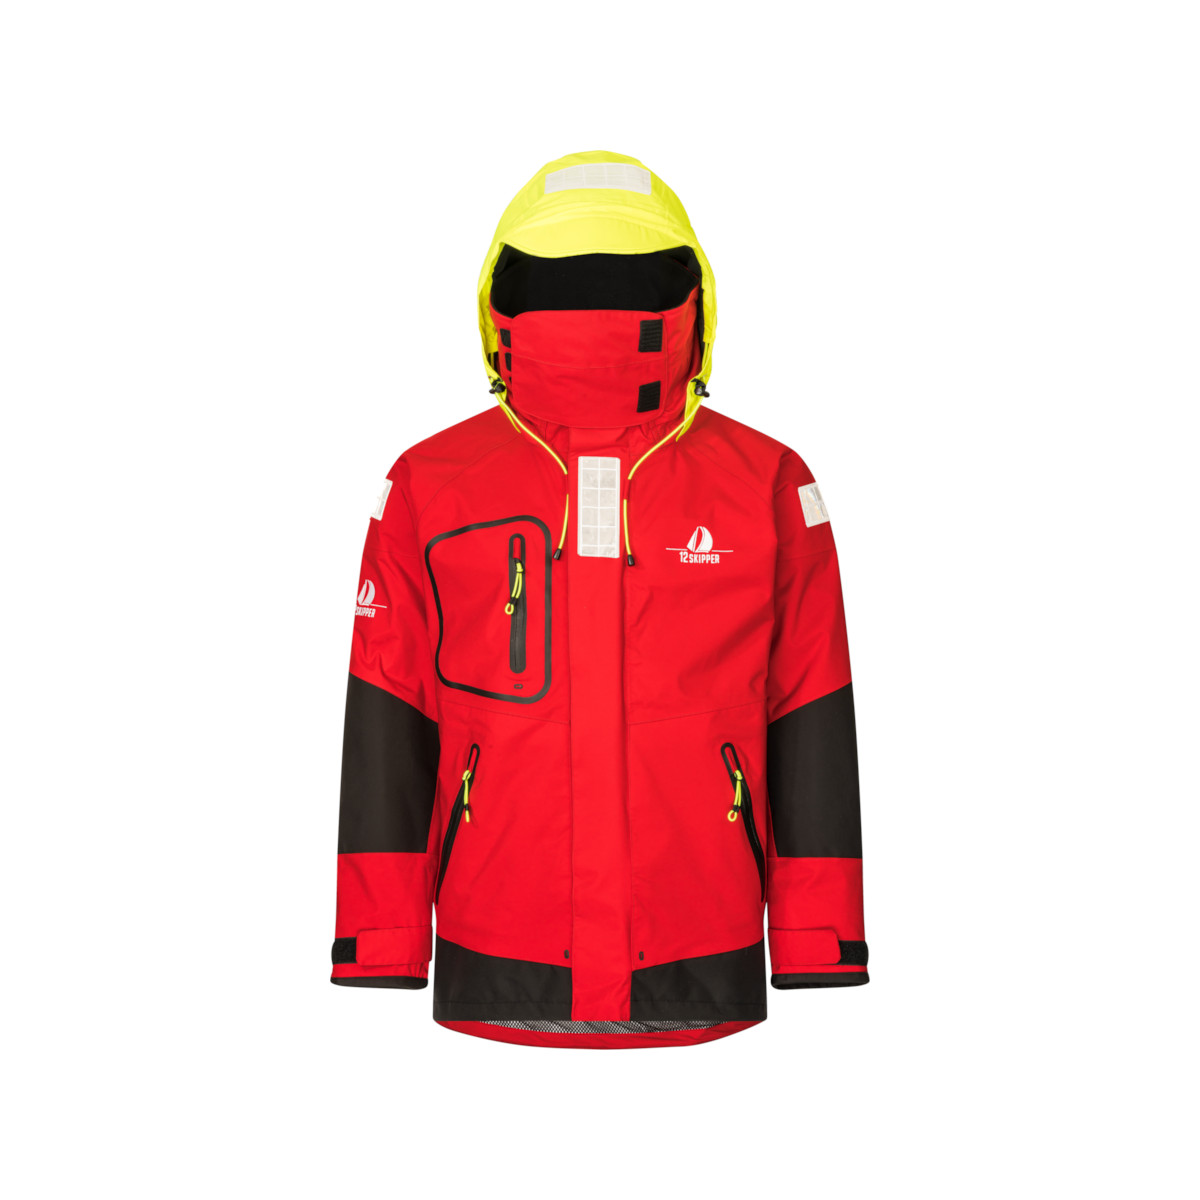 12skipper Magellan veste de quart hauturière, unisexe - rouge, taille XS